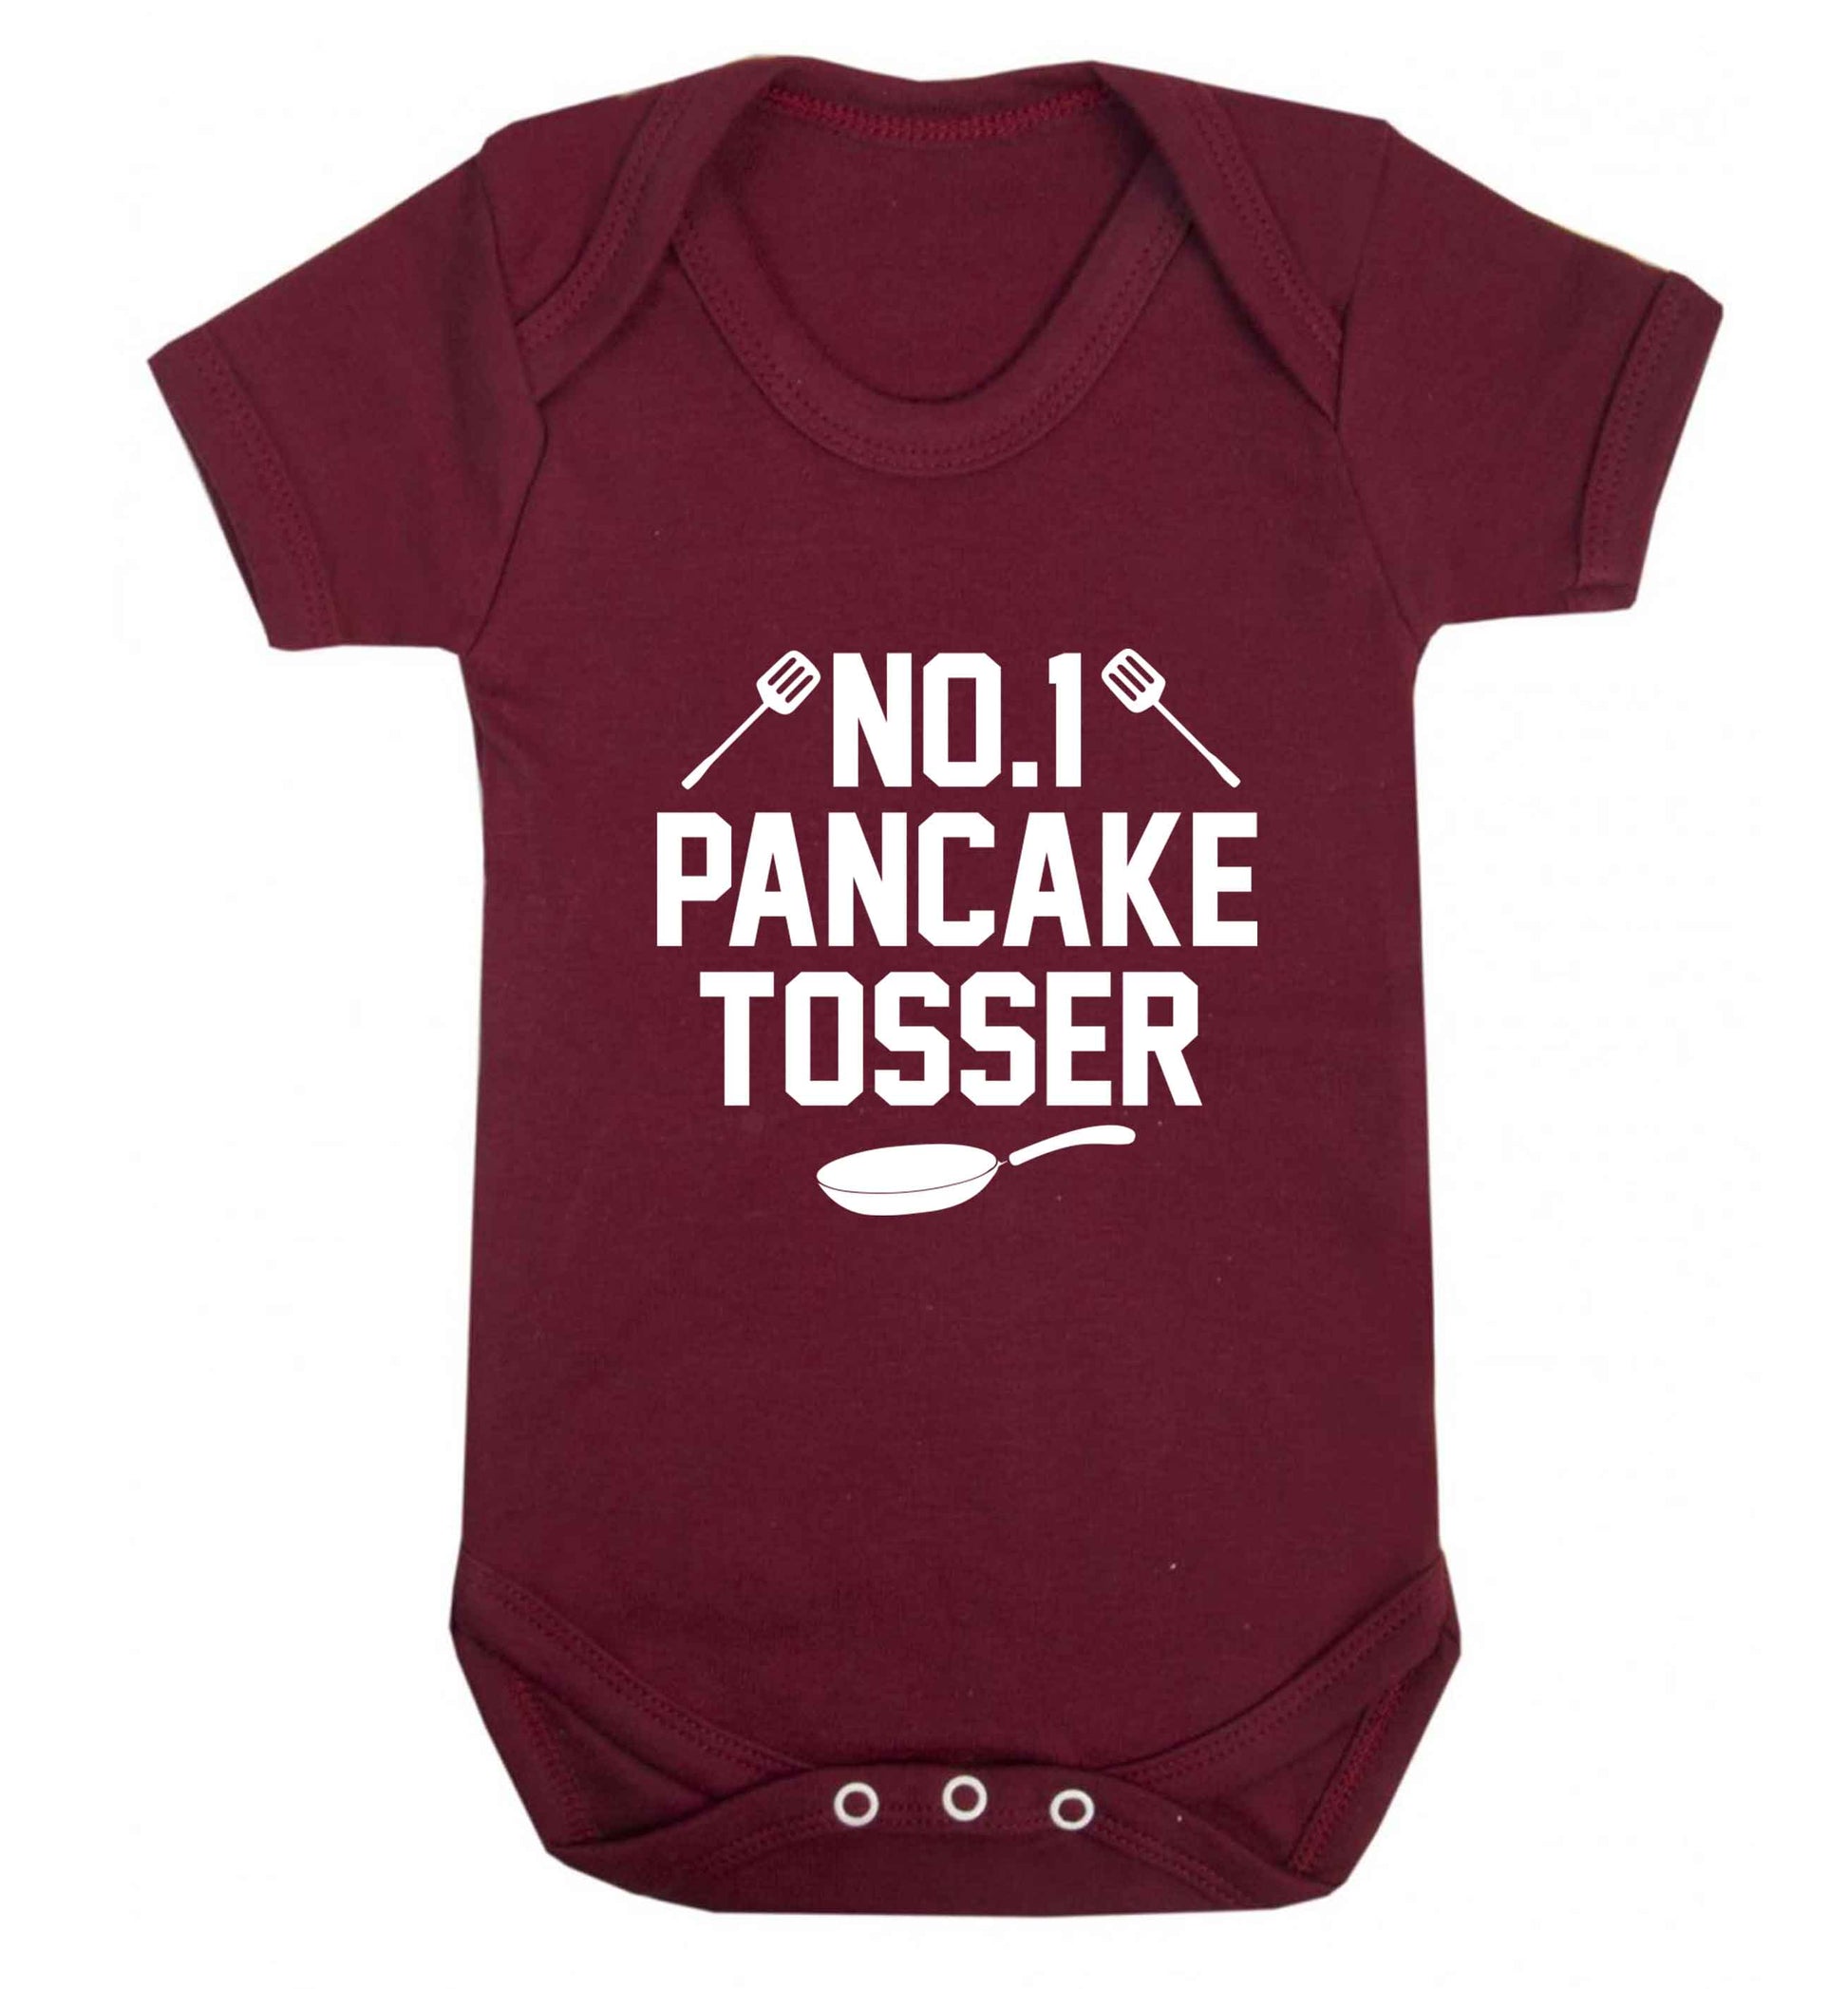 No.1 Pancake tosser baby vest maroon 18-24 months